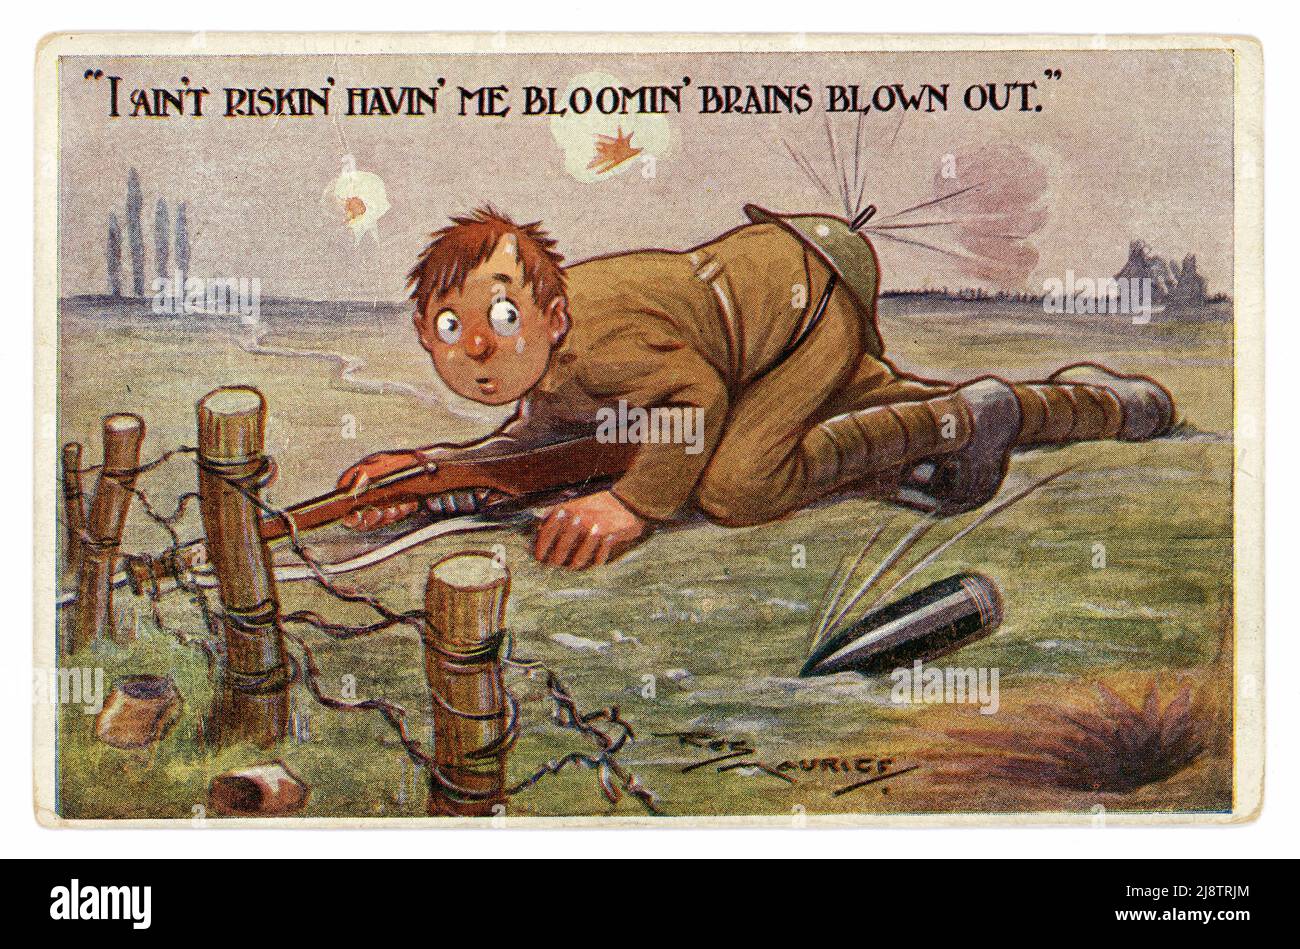 Originale WW1 Jahre freche Grabenhumor Comic-Zeichentrickkarte eines Soldaten an der Front mit einem Blechhelm über seinem Hintern, Hirn-ausgeblasener Witz, 1914-1918. Stockfoto